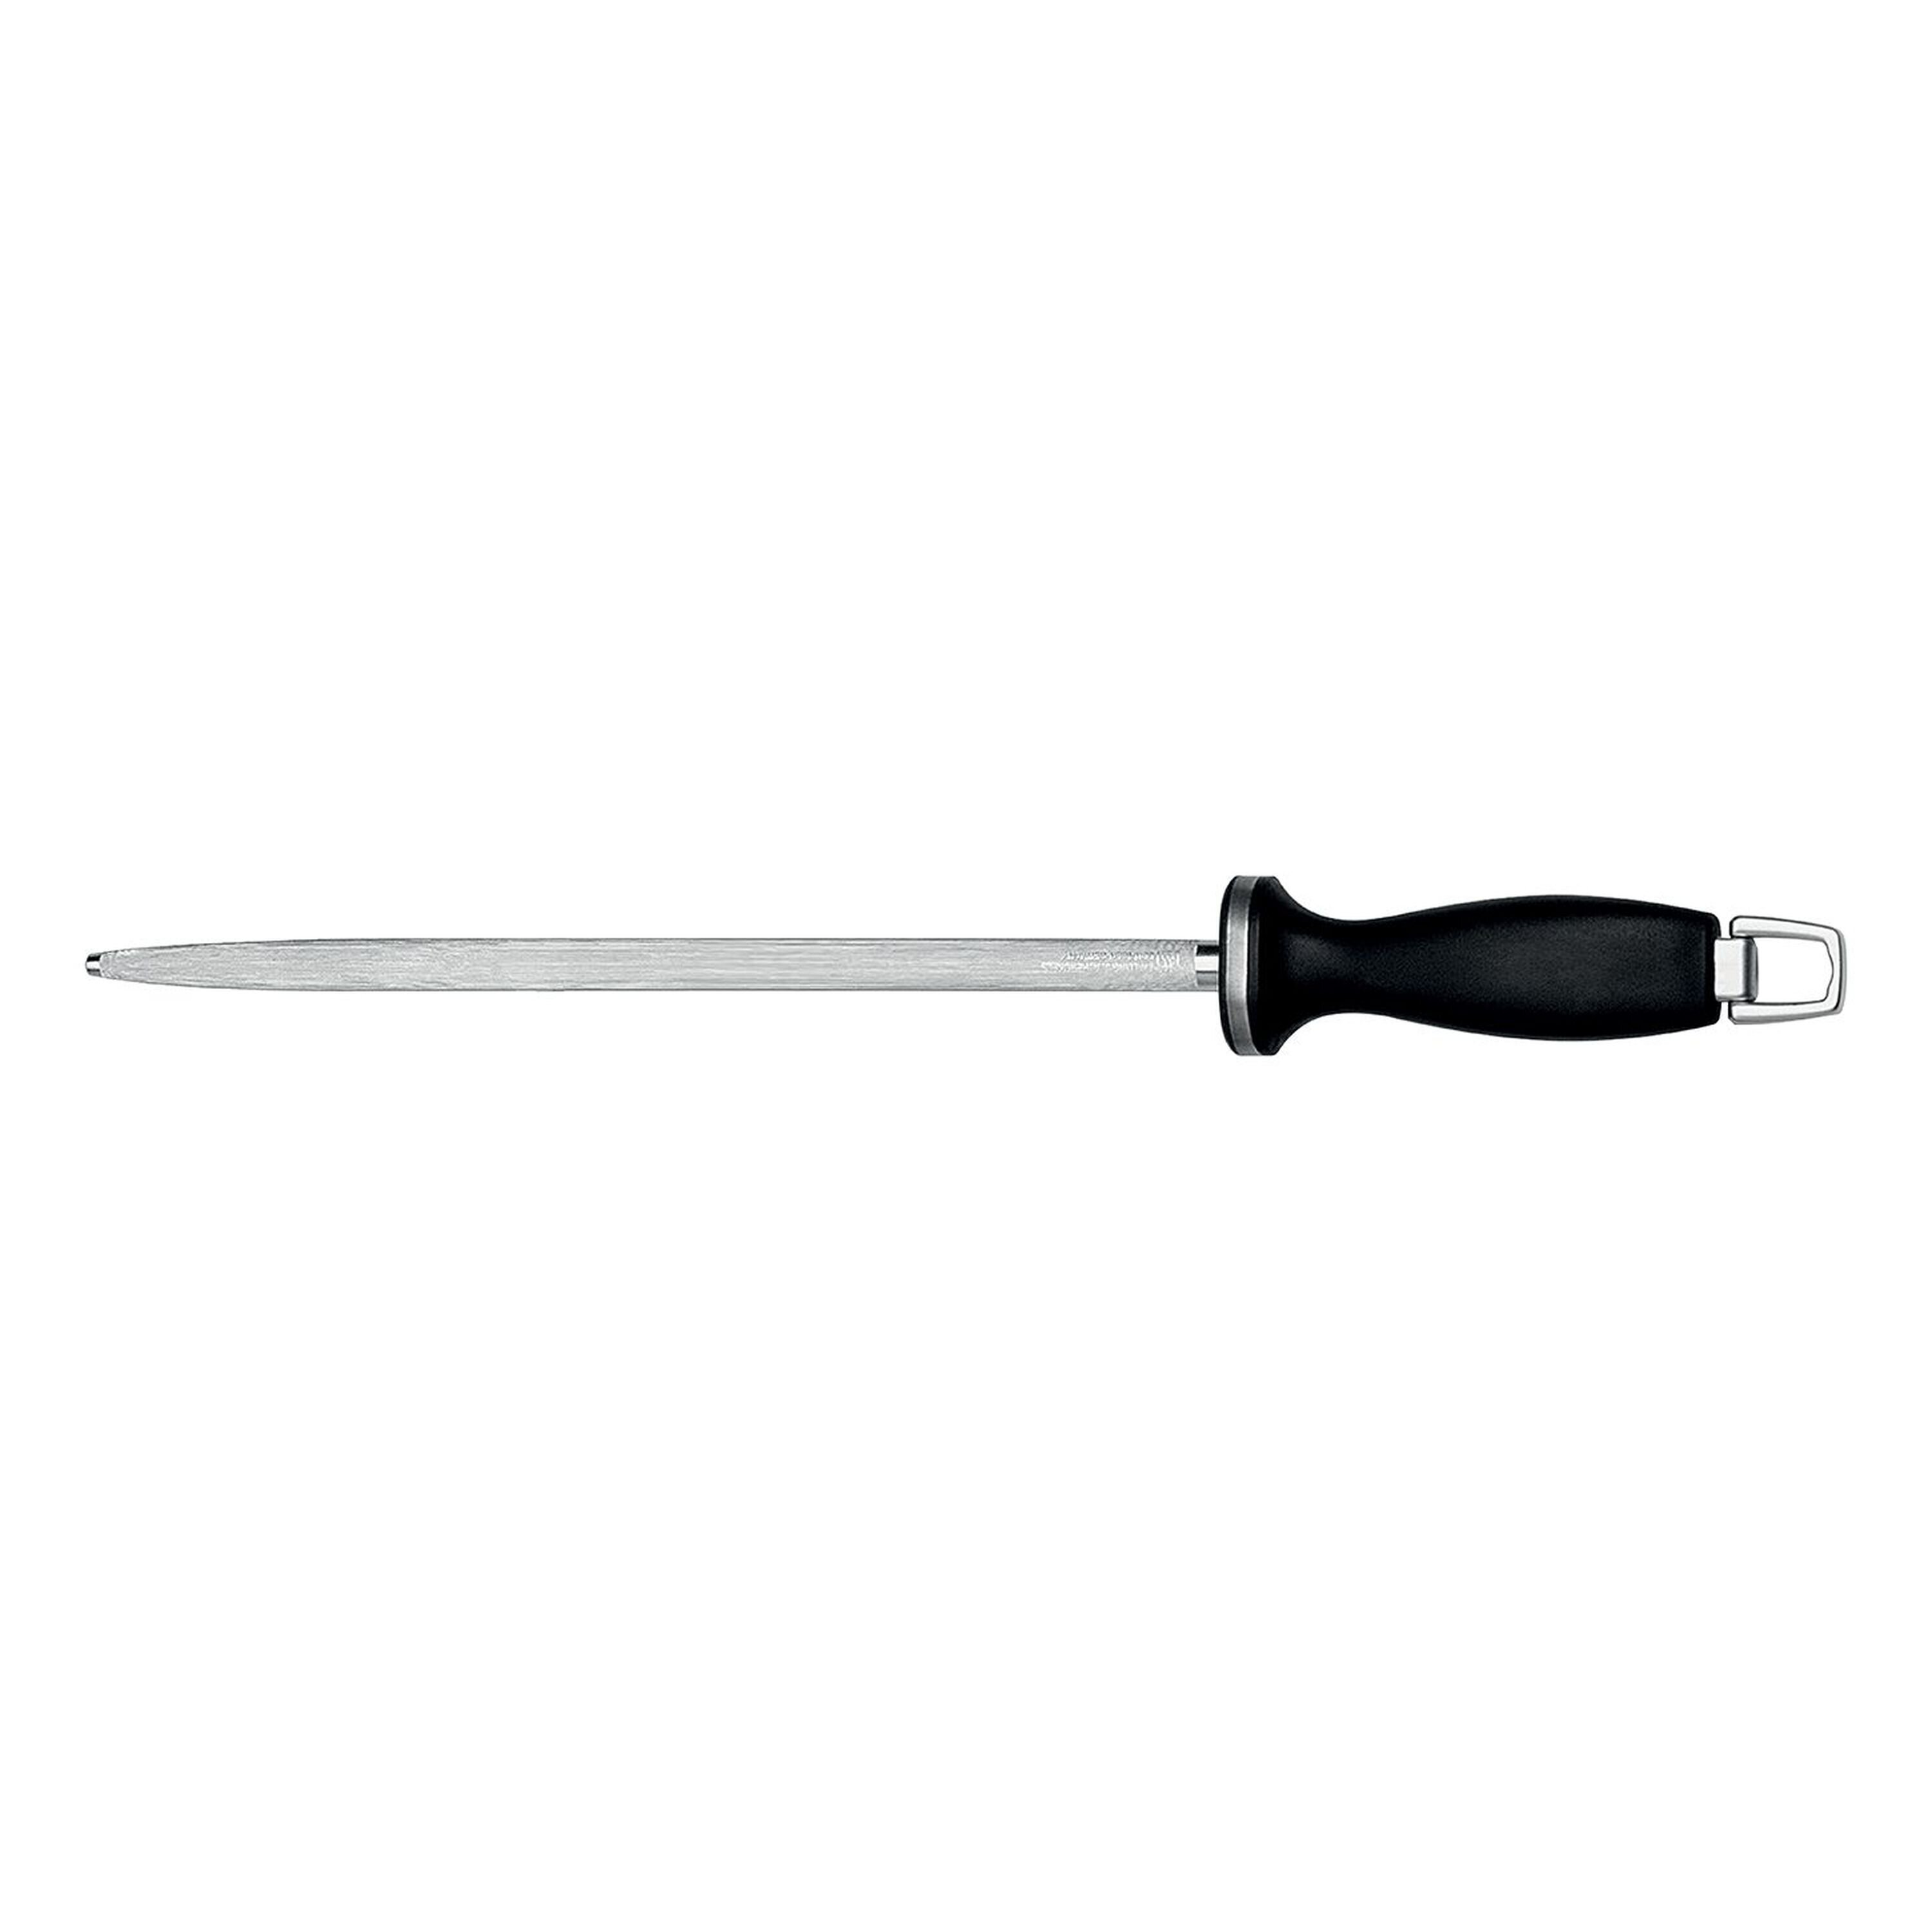 Chef'sChoice Hybrid Knife Sharpener for 20-Degree Knives, G202, White